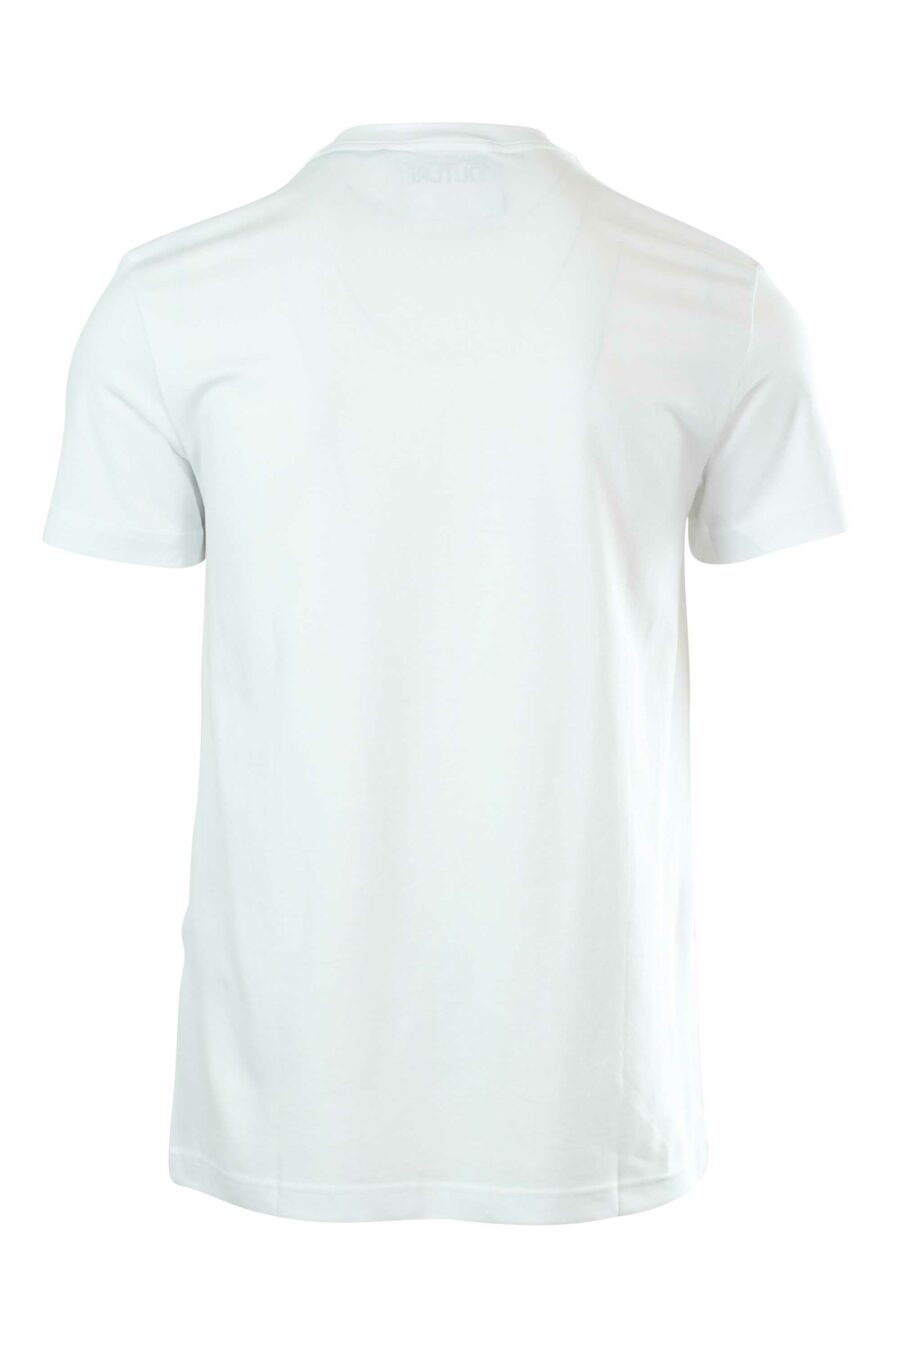 Weißes T-Shirt mit Logo am Kragen - 8052019237092 2